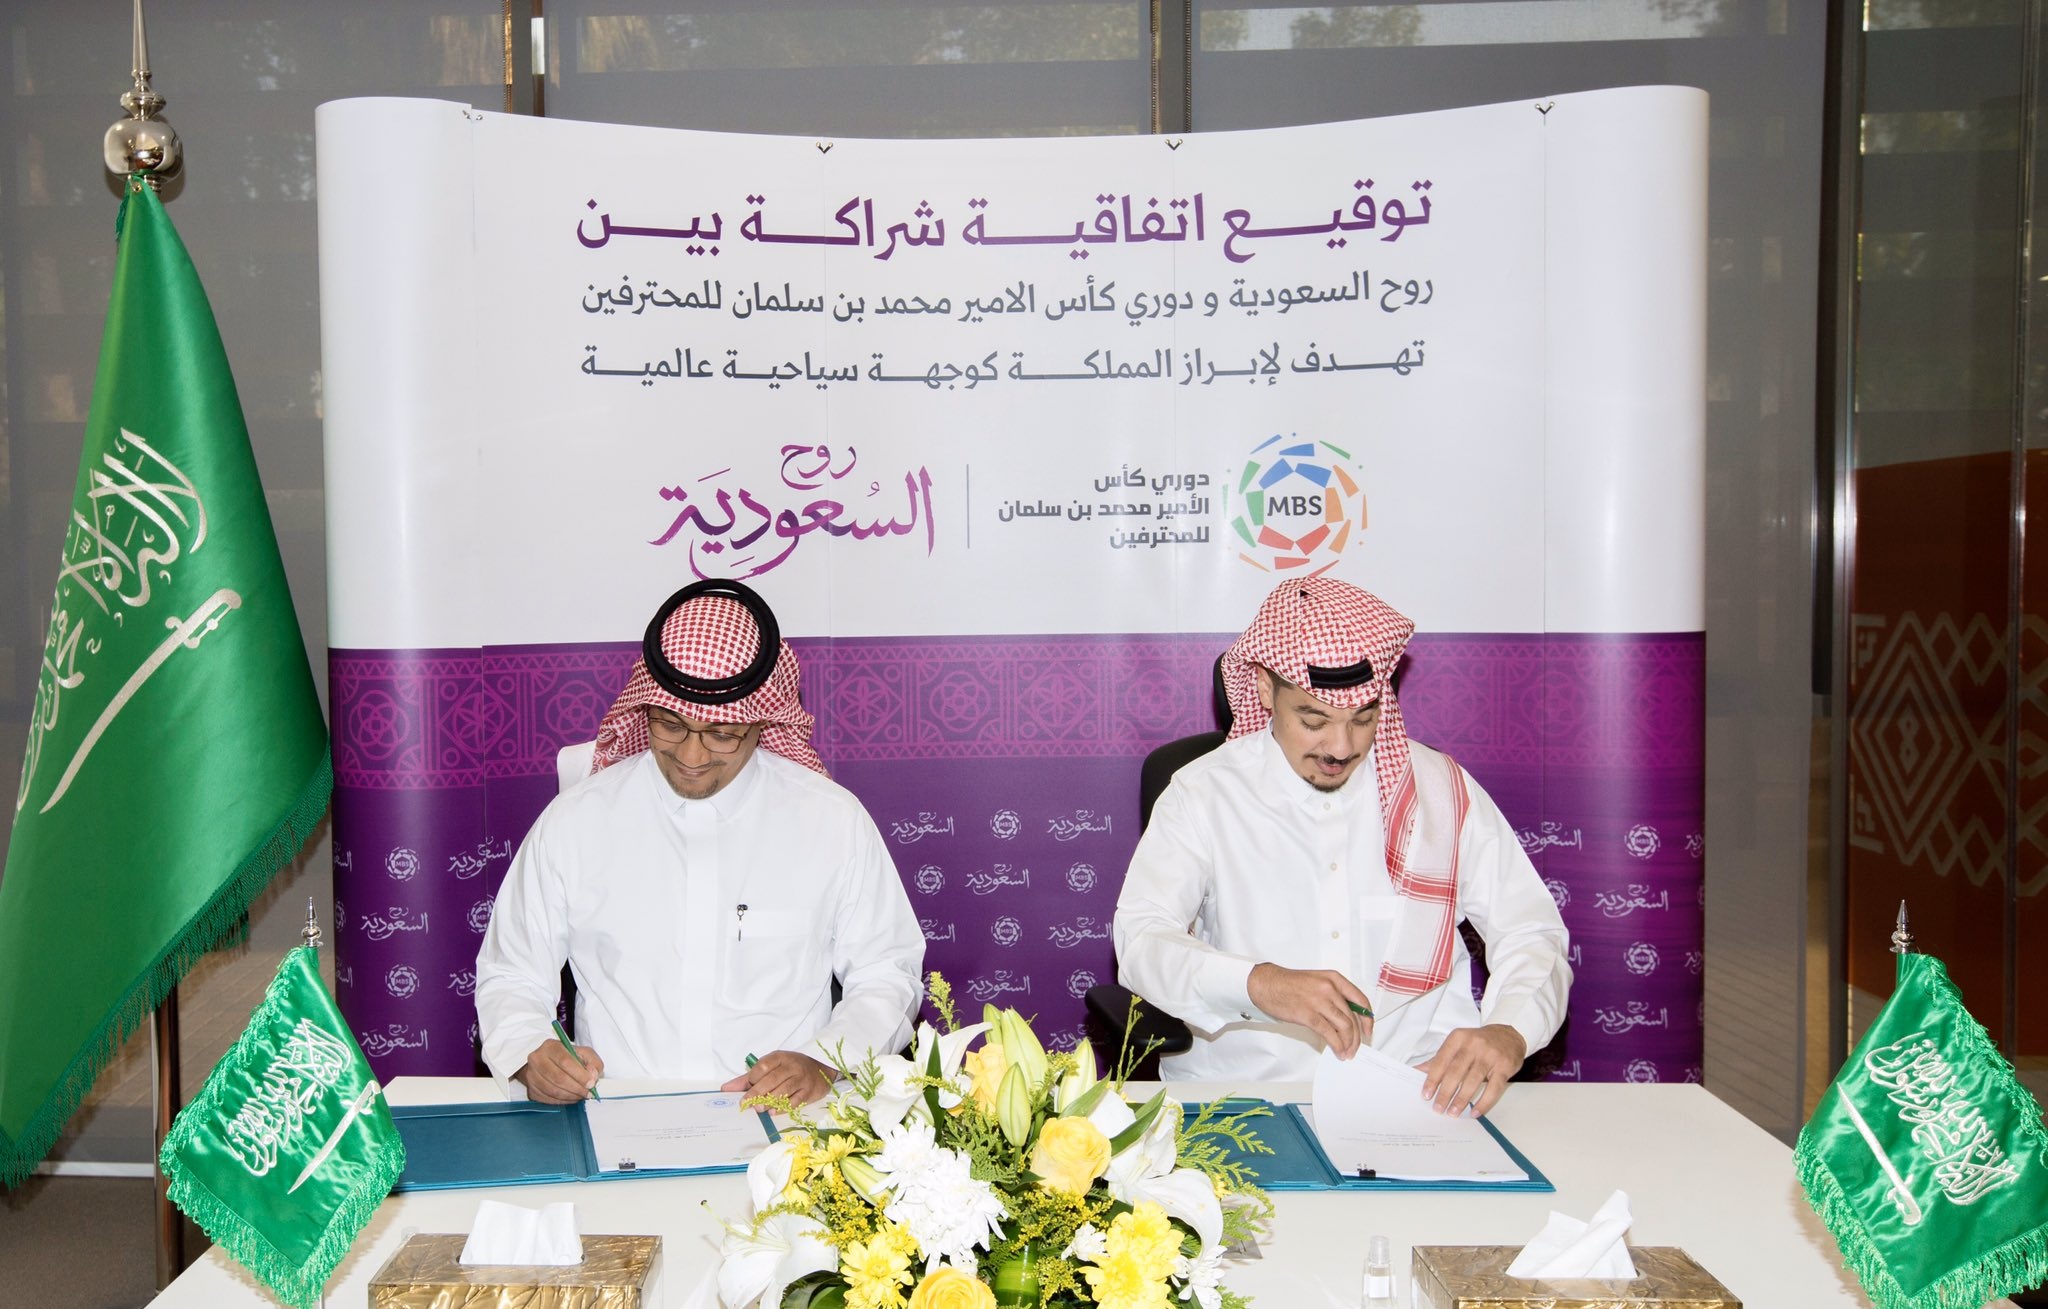 اتفاقية بين دوري محمد بن سلمان وروح السعودية لإبراز المملكة عالميًّا